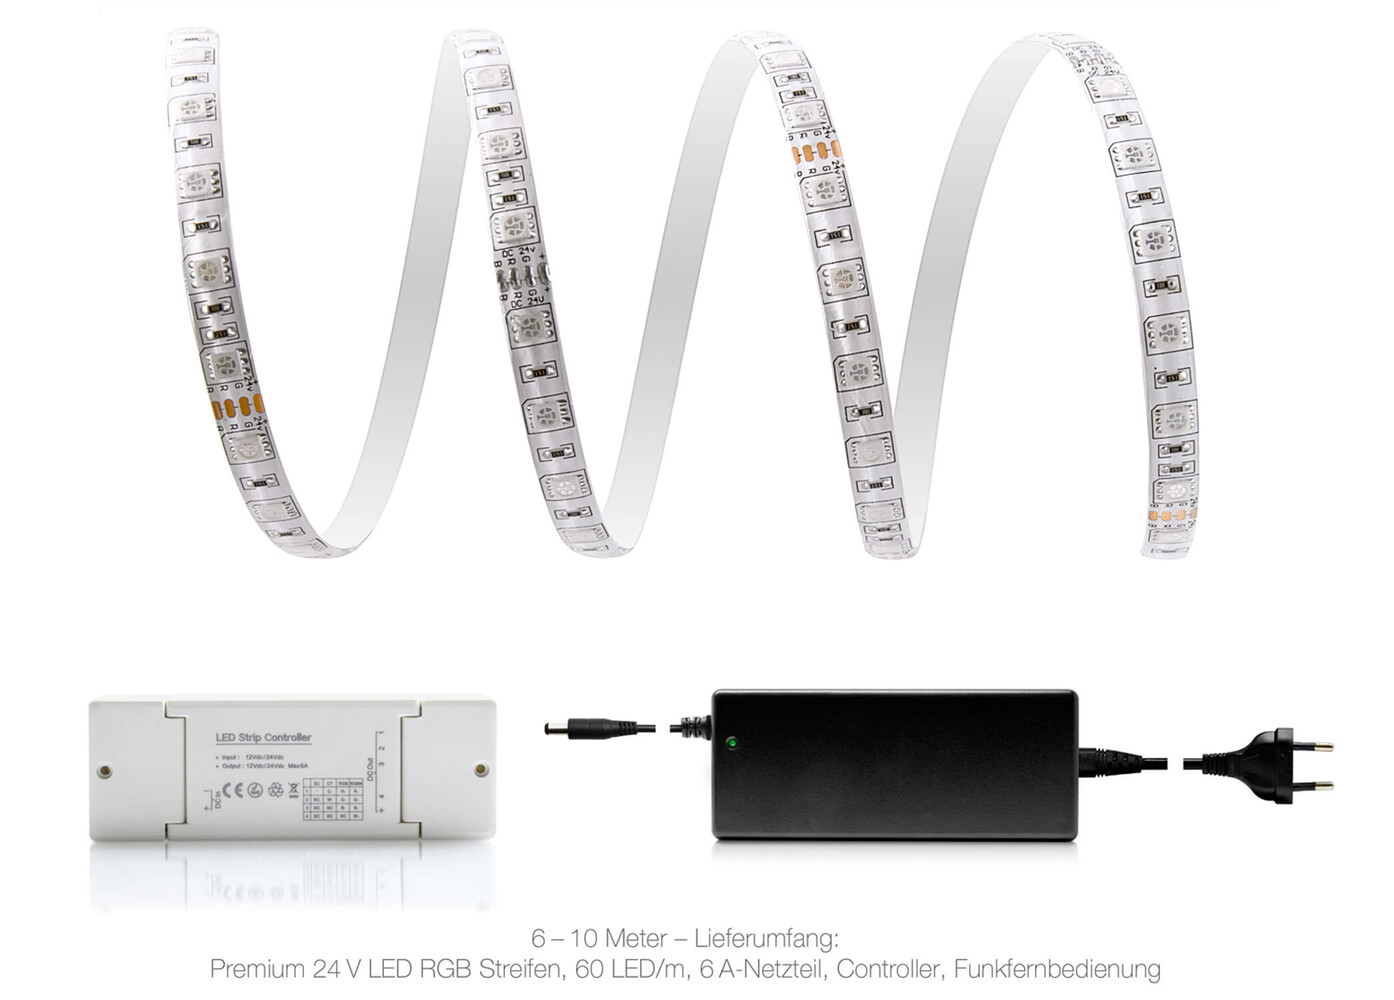 Hochwertiger Premium 24V RGB LED Streifen von LED Universum mit Smart Home Funktionen